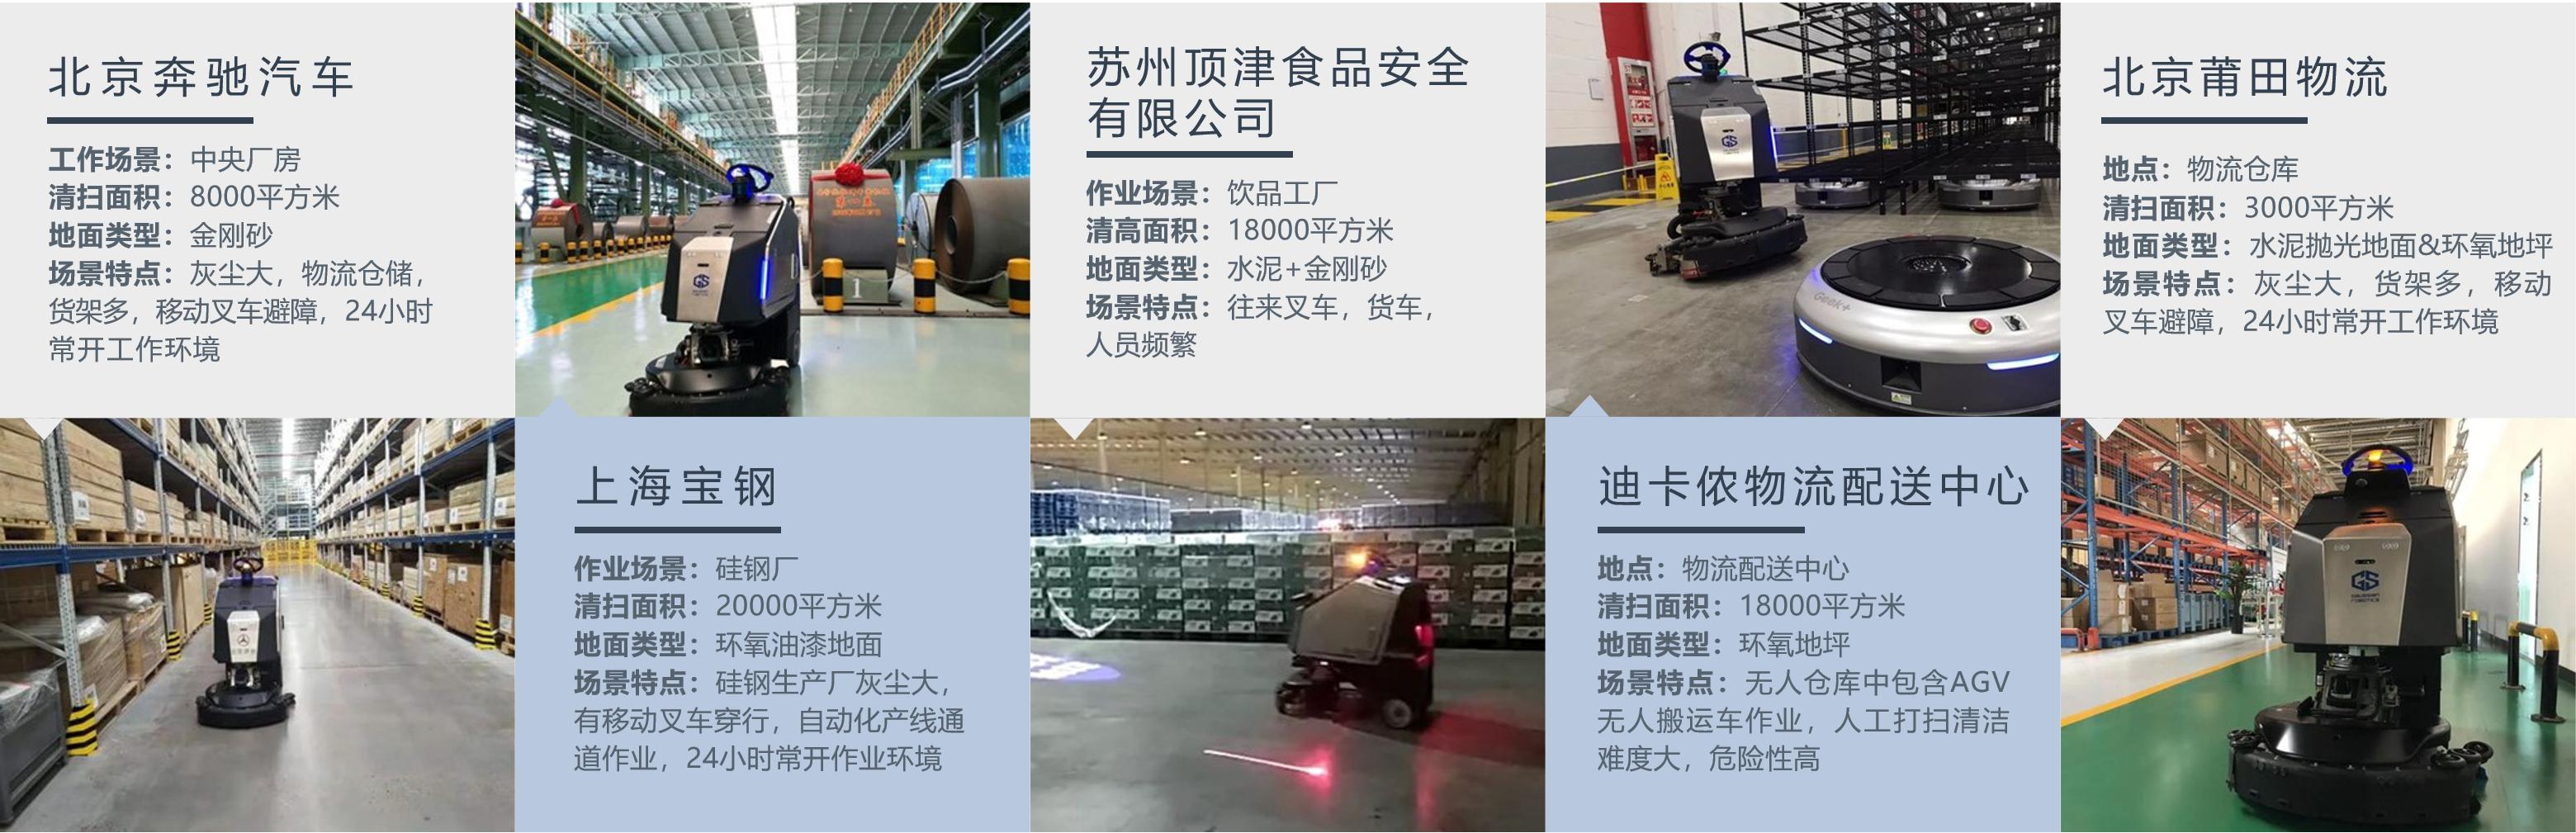 高仙|奔驰、西门子、辉瑞都在用的工厂保洁机器人来自高仙